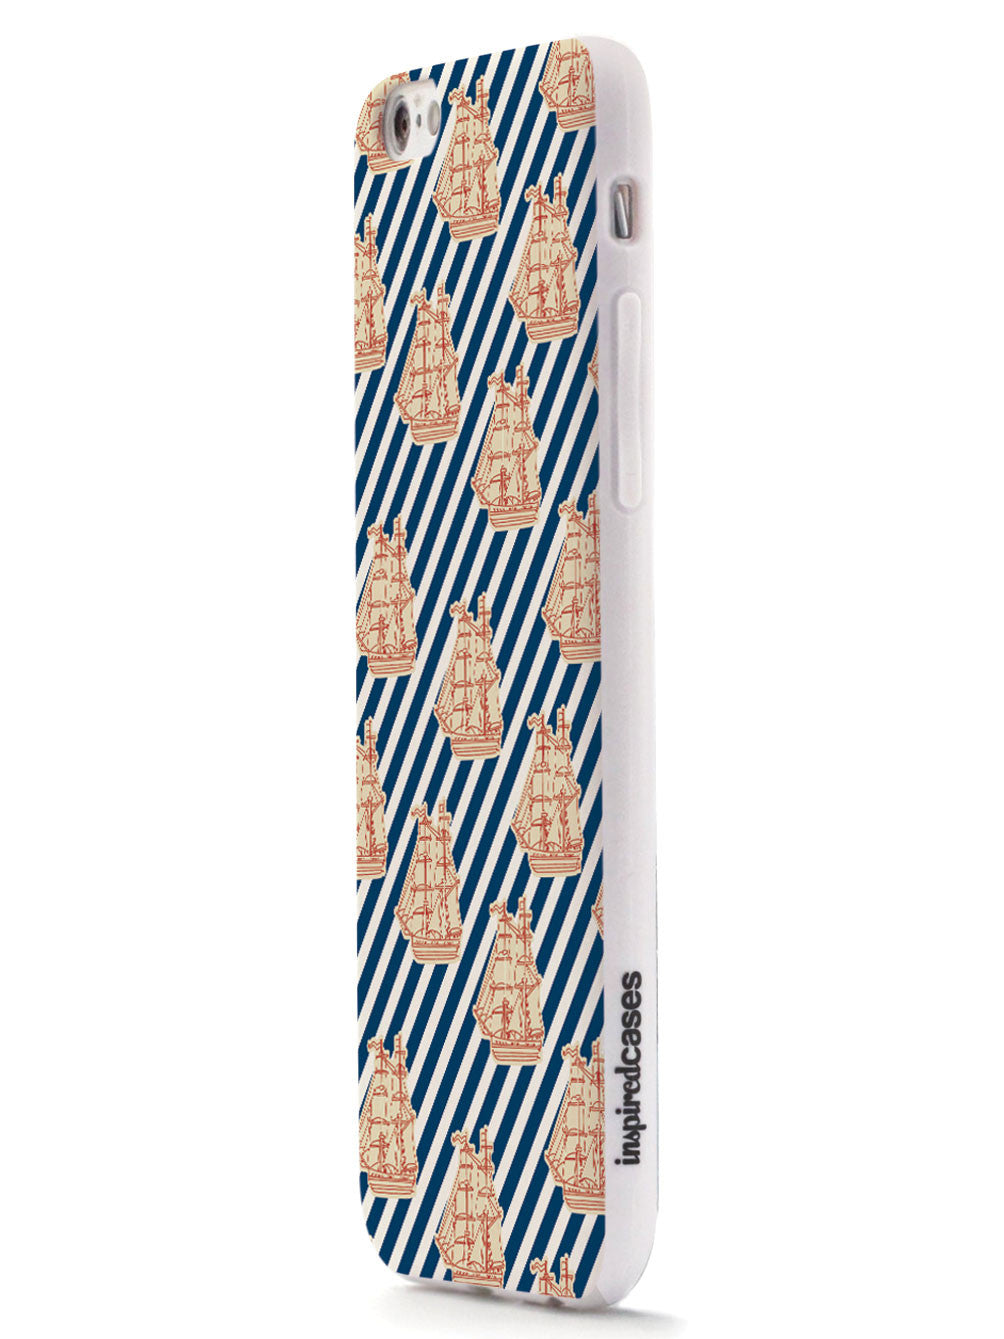 Tall Ship - Diagonal Stripes Pattern - White Case